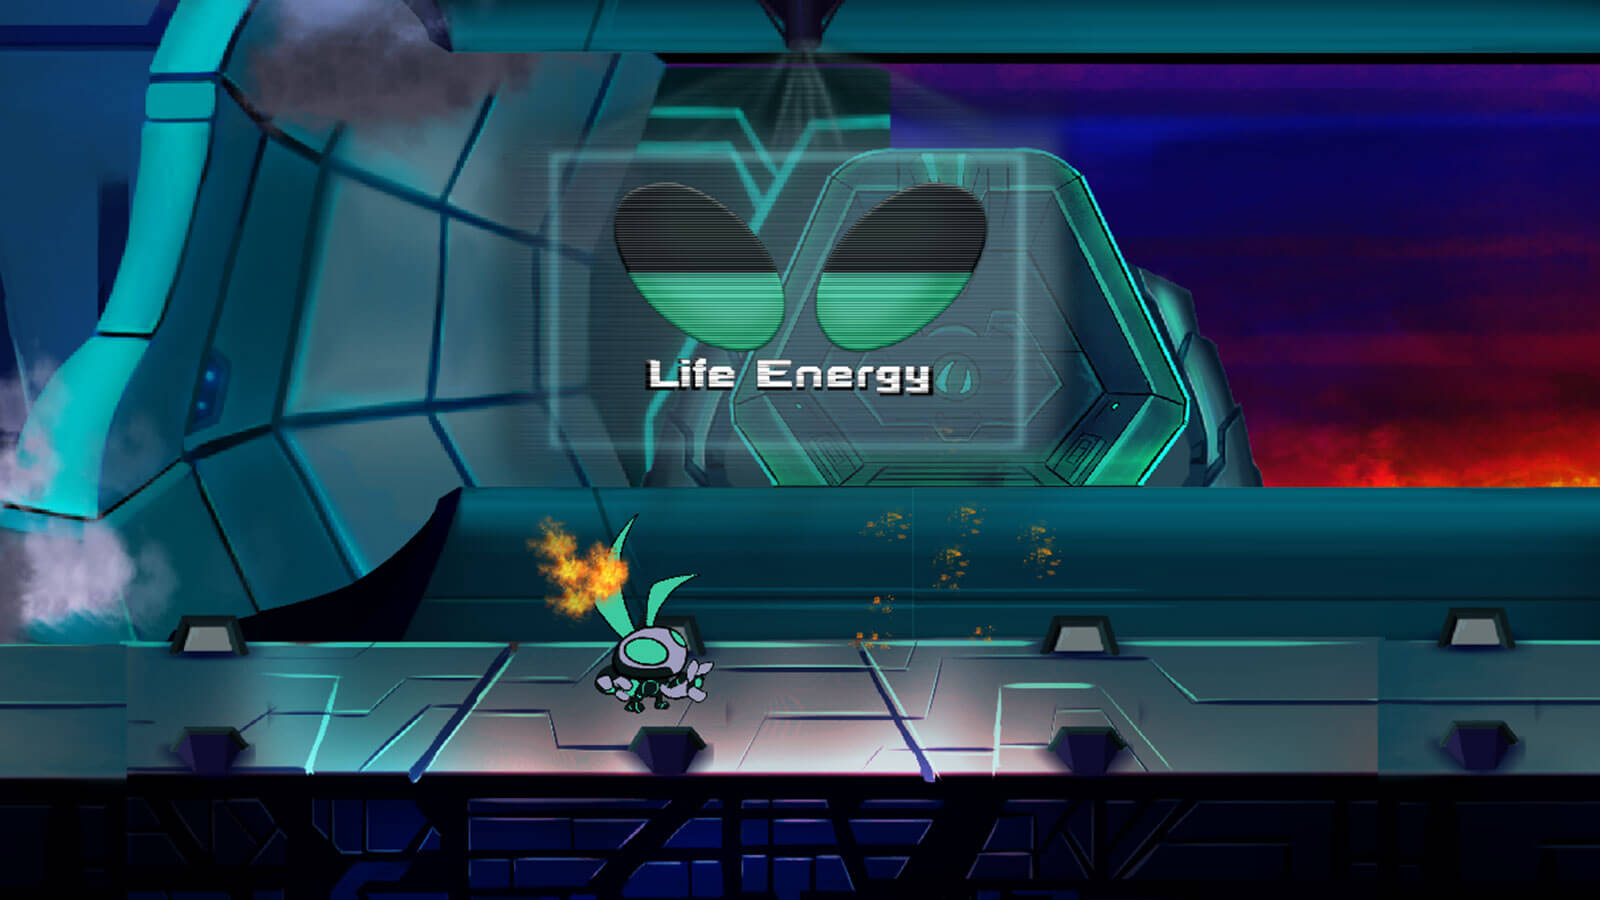 El jugador camina a lo largo de la plataforma de metal con un mensaje en la pantalla que dice &#039;Life Energy&#039;.